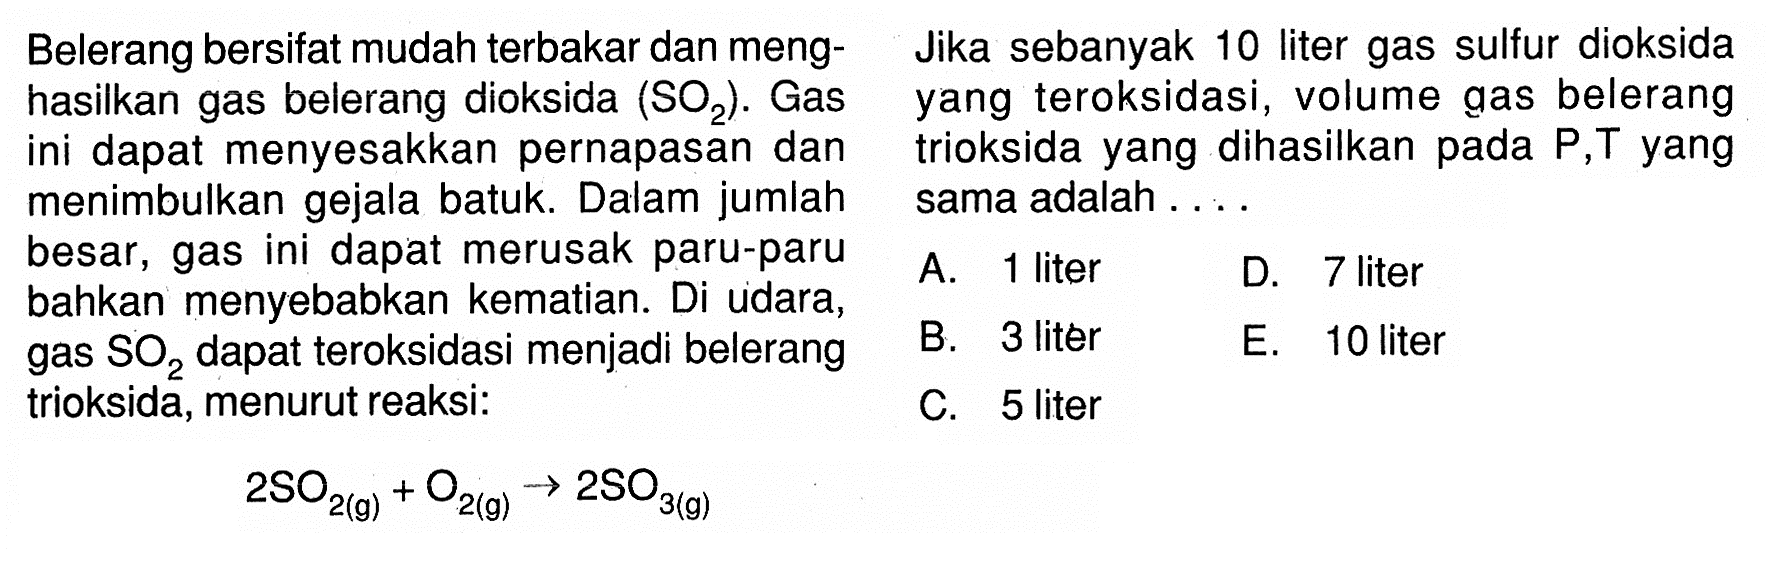 Belerang bersifat mudah terbakar dan meng- Jika sebanyak 10 liter gas sulfur dioksida hasilkan gas belerang dioksida  SO2. Gas yang teroksidasi, volume gas belerang ini dapat menyesakkan pernapasan dan trioksida yang dihasilkan pada P,T yang menimbulkan gejala batuk. Dalam jumlah sama adalah .... besar, gas ini dapat merusak paru-paru bahkan menyebabkan kematian. Di udara,A. 1 liter B. 3 liter C. 5 liter D. 7 liter gas  (SO)_(2)  dapat teroksidasi menjadi belerang E. 10 liter trioksida, menurut reaksi:2SO2(g)+O2(g) --> 2SO3(g)